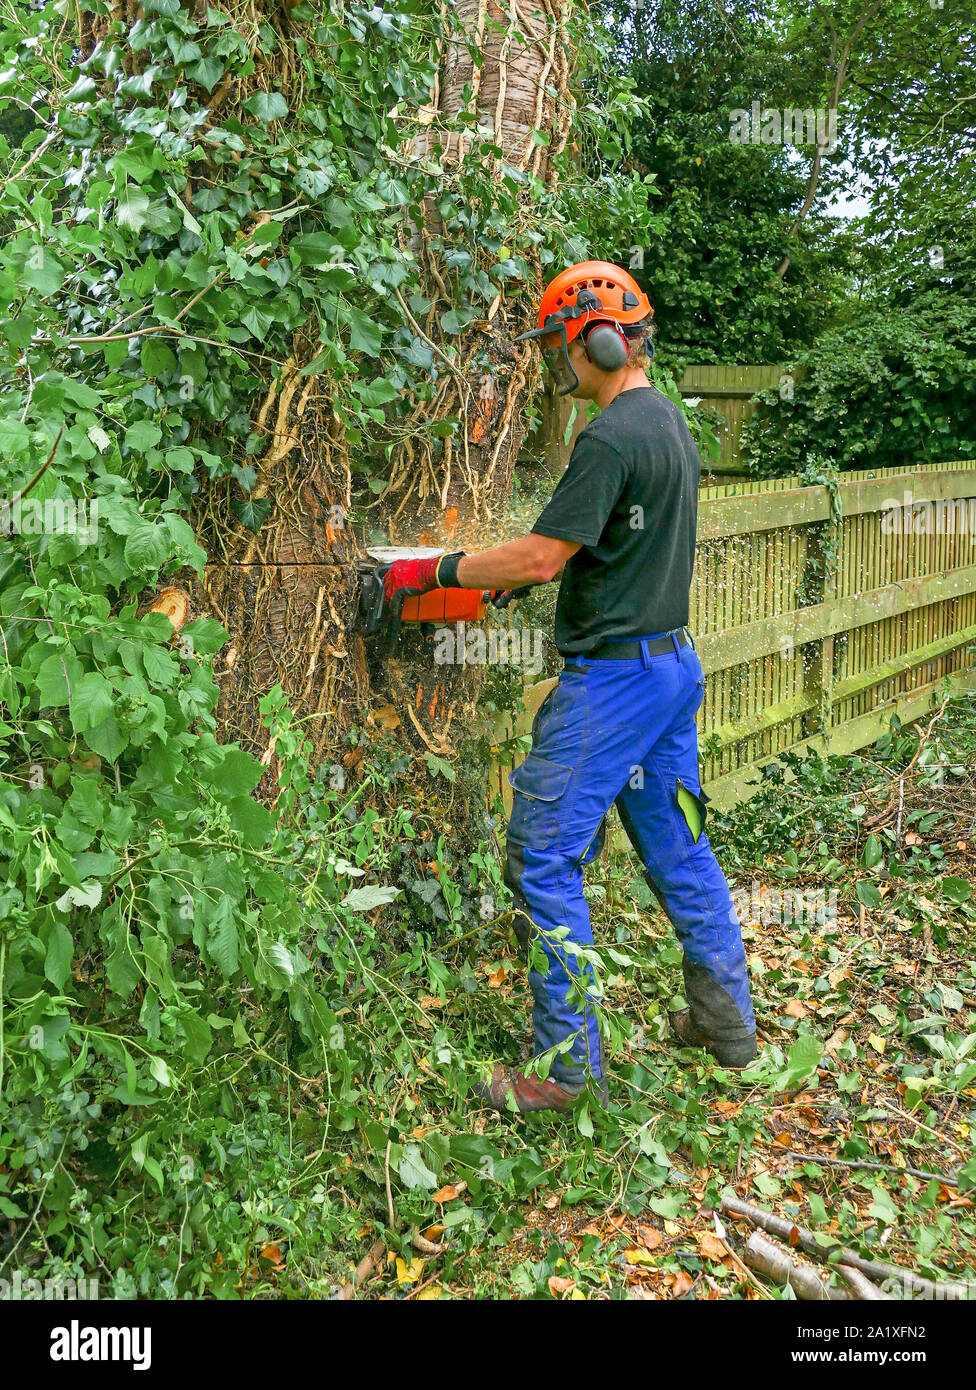 Arborist o albero chirurgo a partire per abbattere un albero utilizzando una motosega e indossare attrezzature di sicurezza. Foto Stock